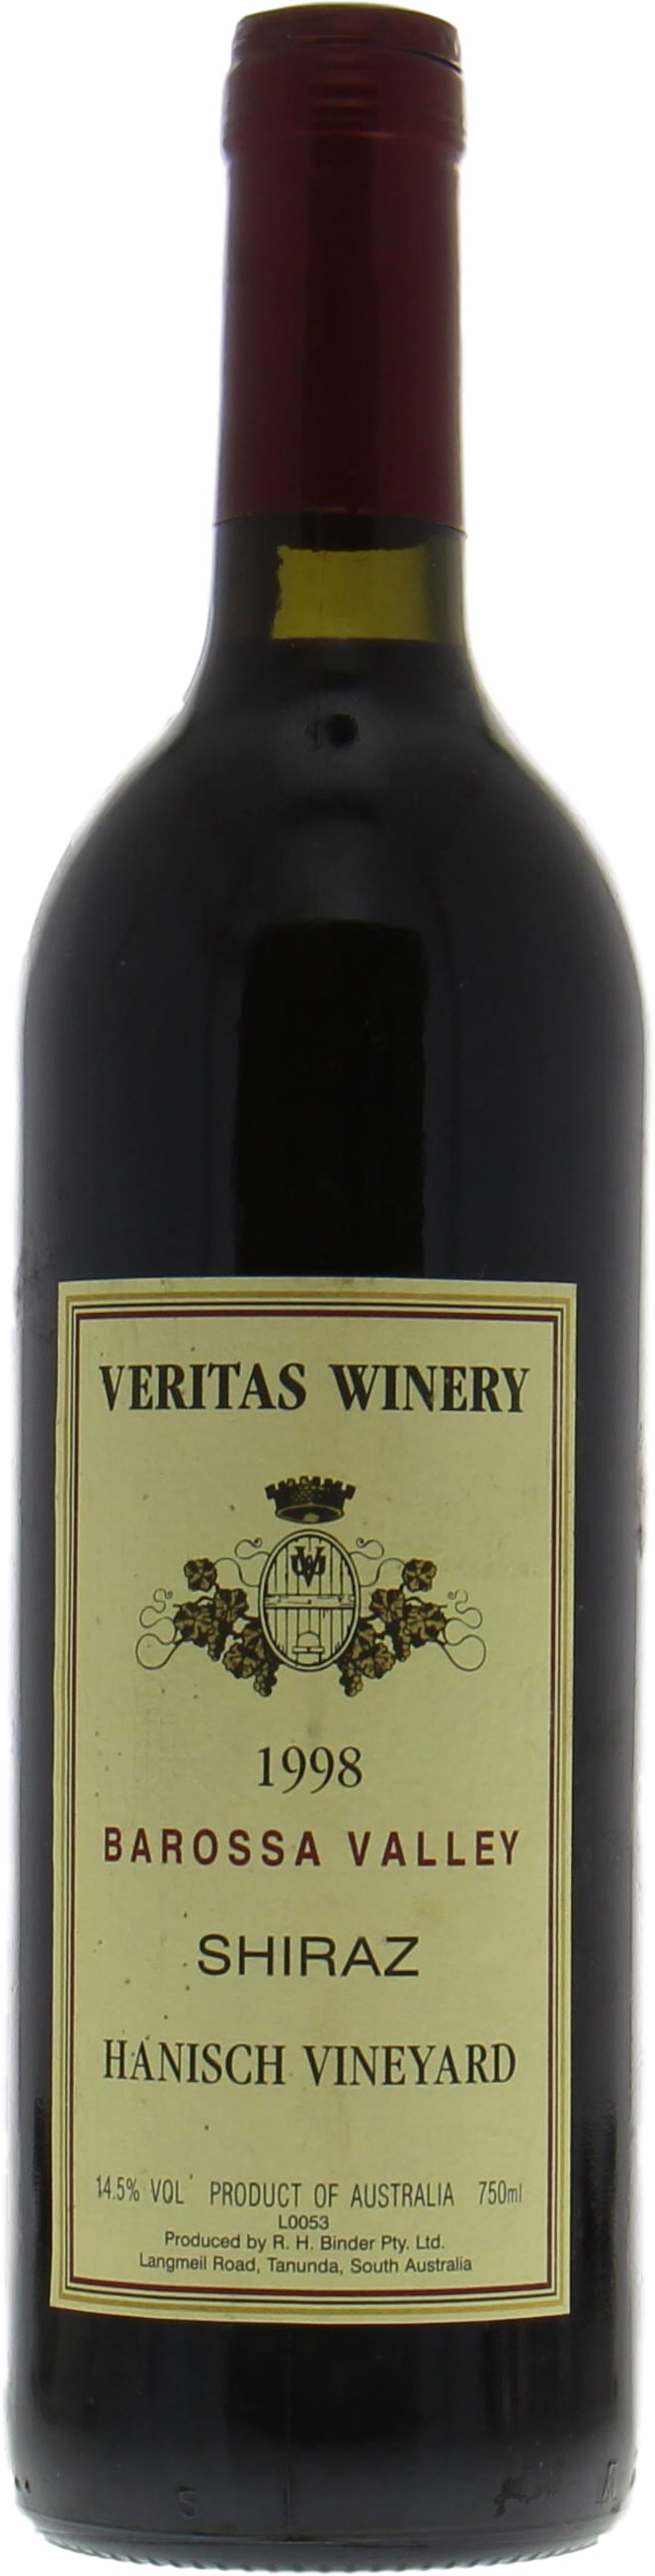 Veritas Winery - Hanisch Shiraz 1998